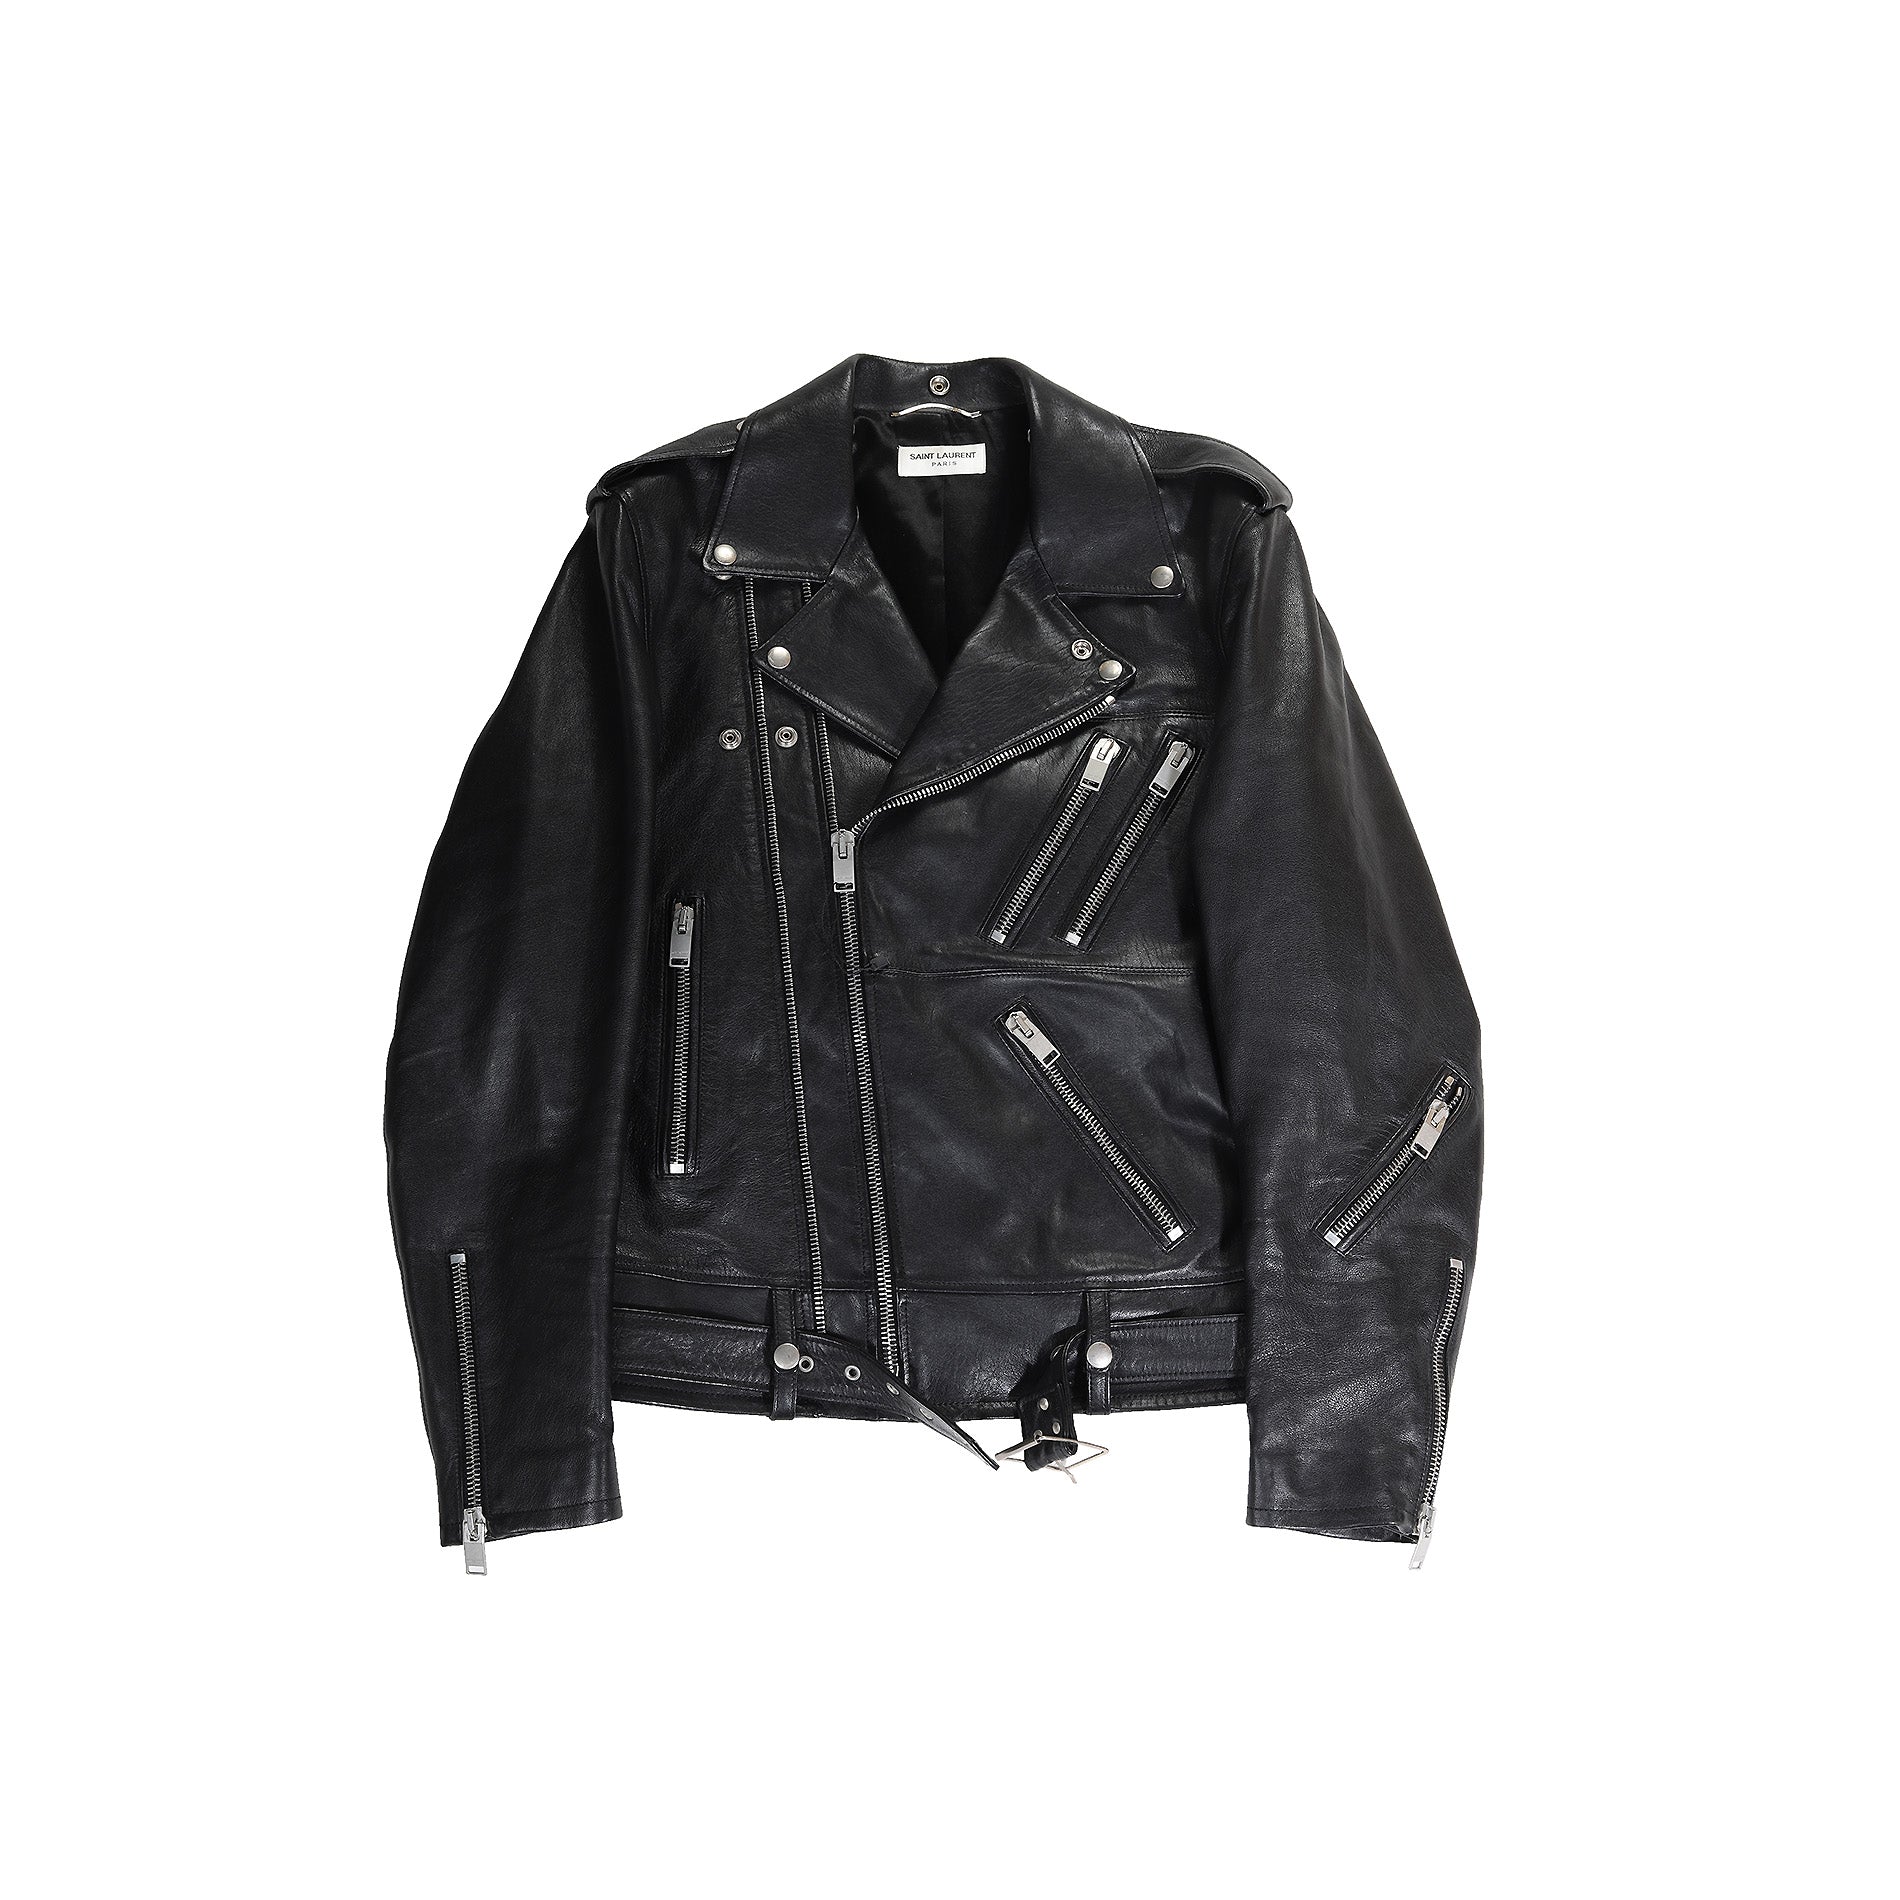 Saint Laurent Paris SS14 Multi Zip Black Leather Biker Jacket